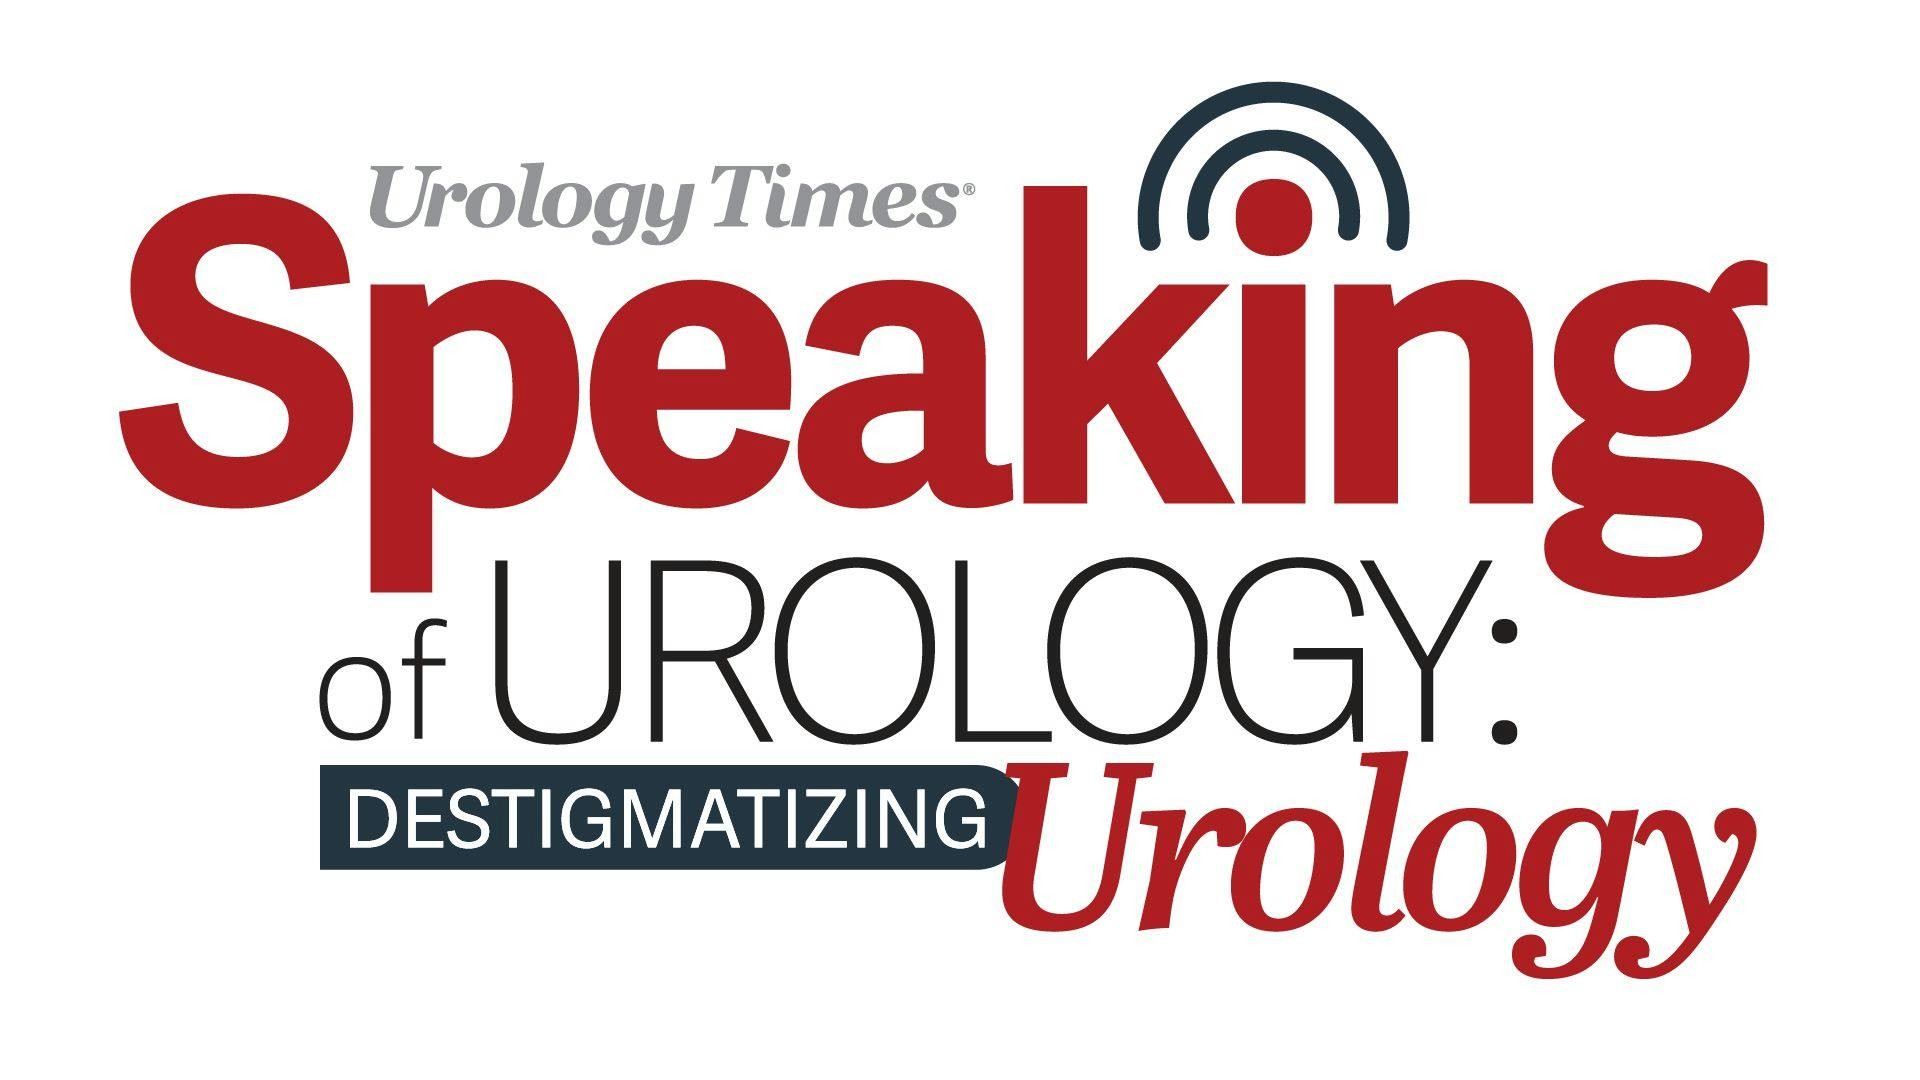 Destigmatizing Urology: Dr. Pruthi discusses mental health